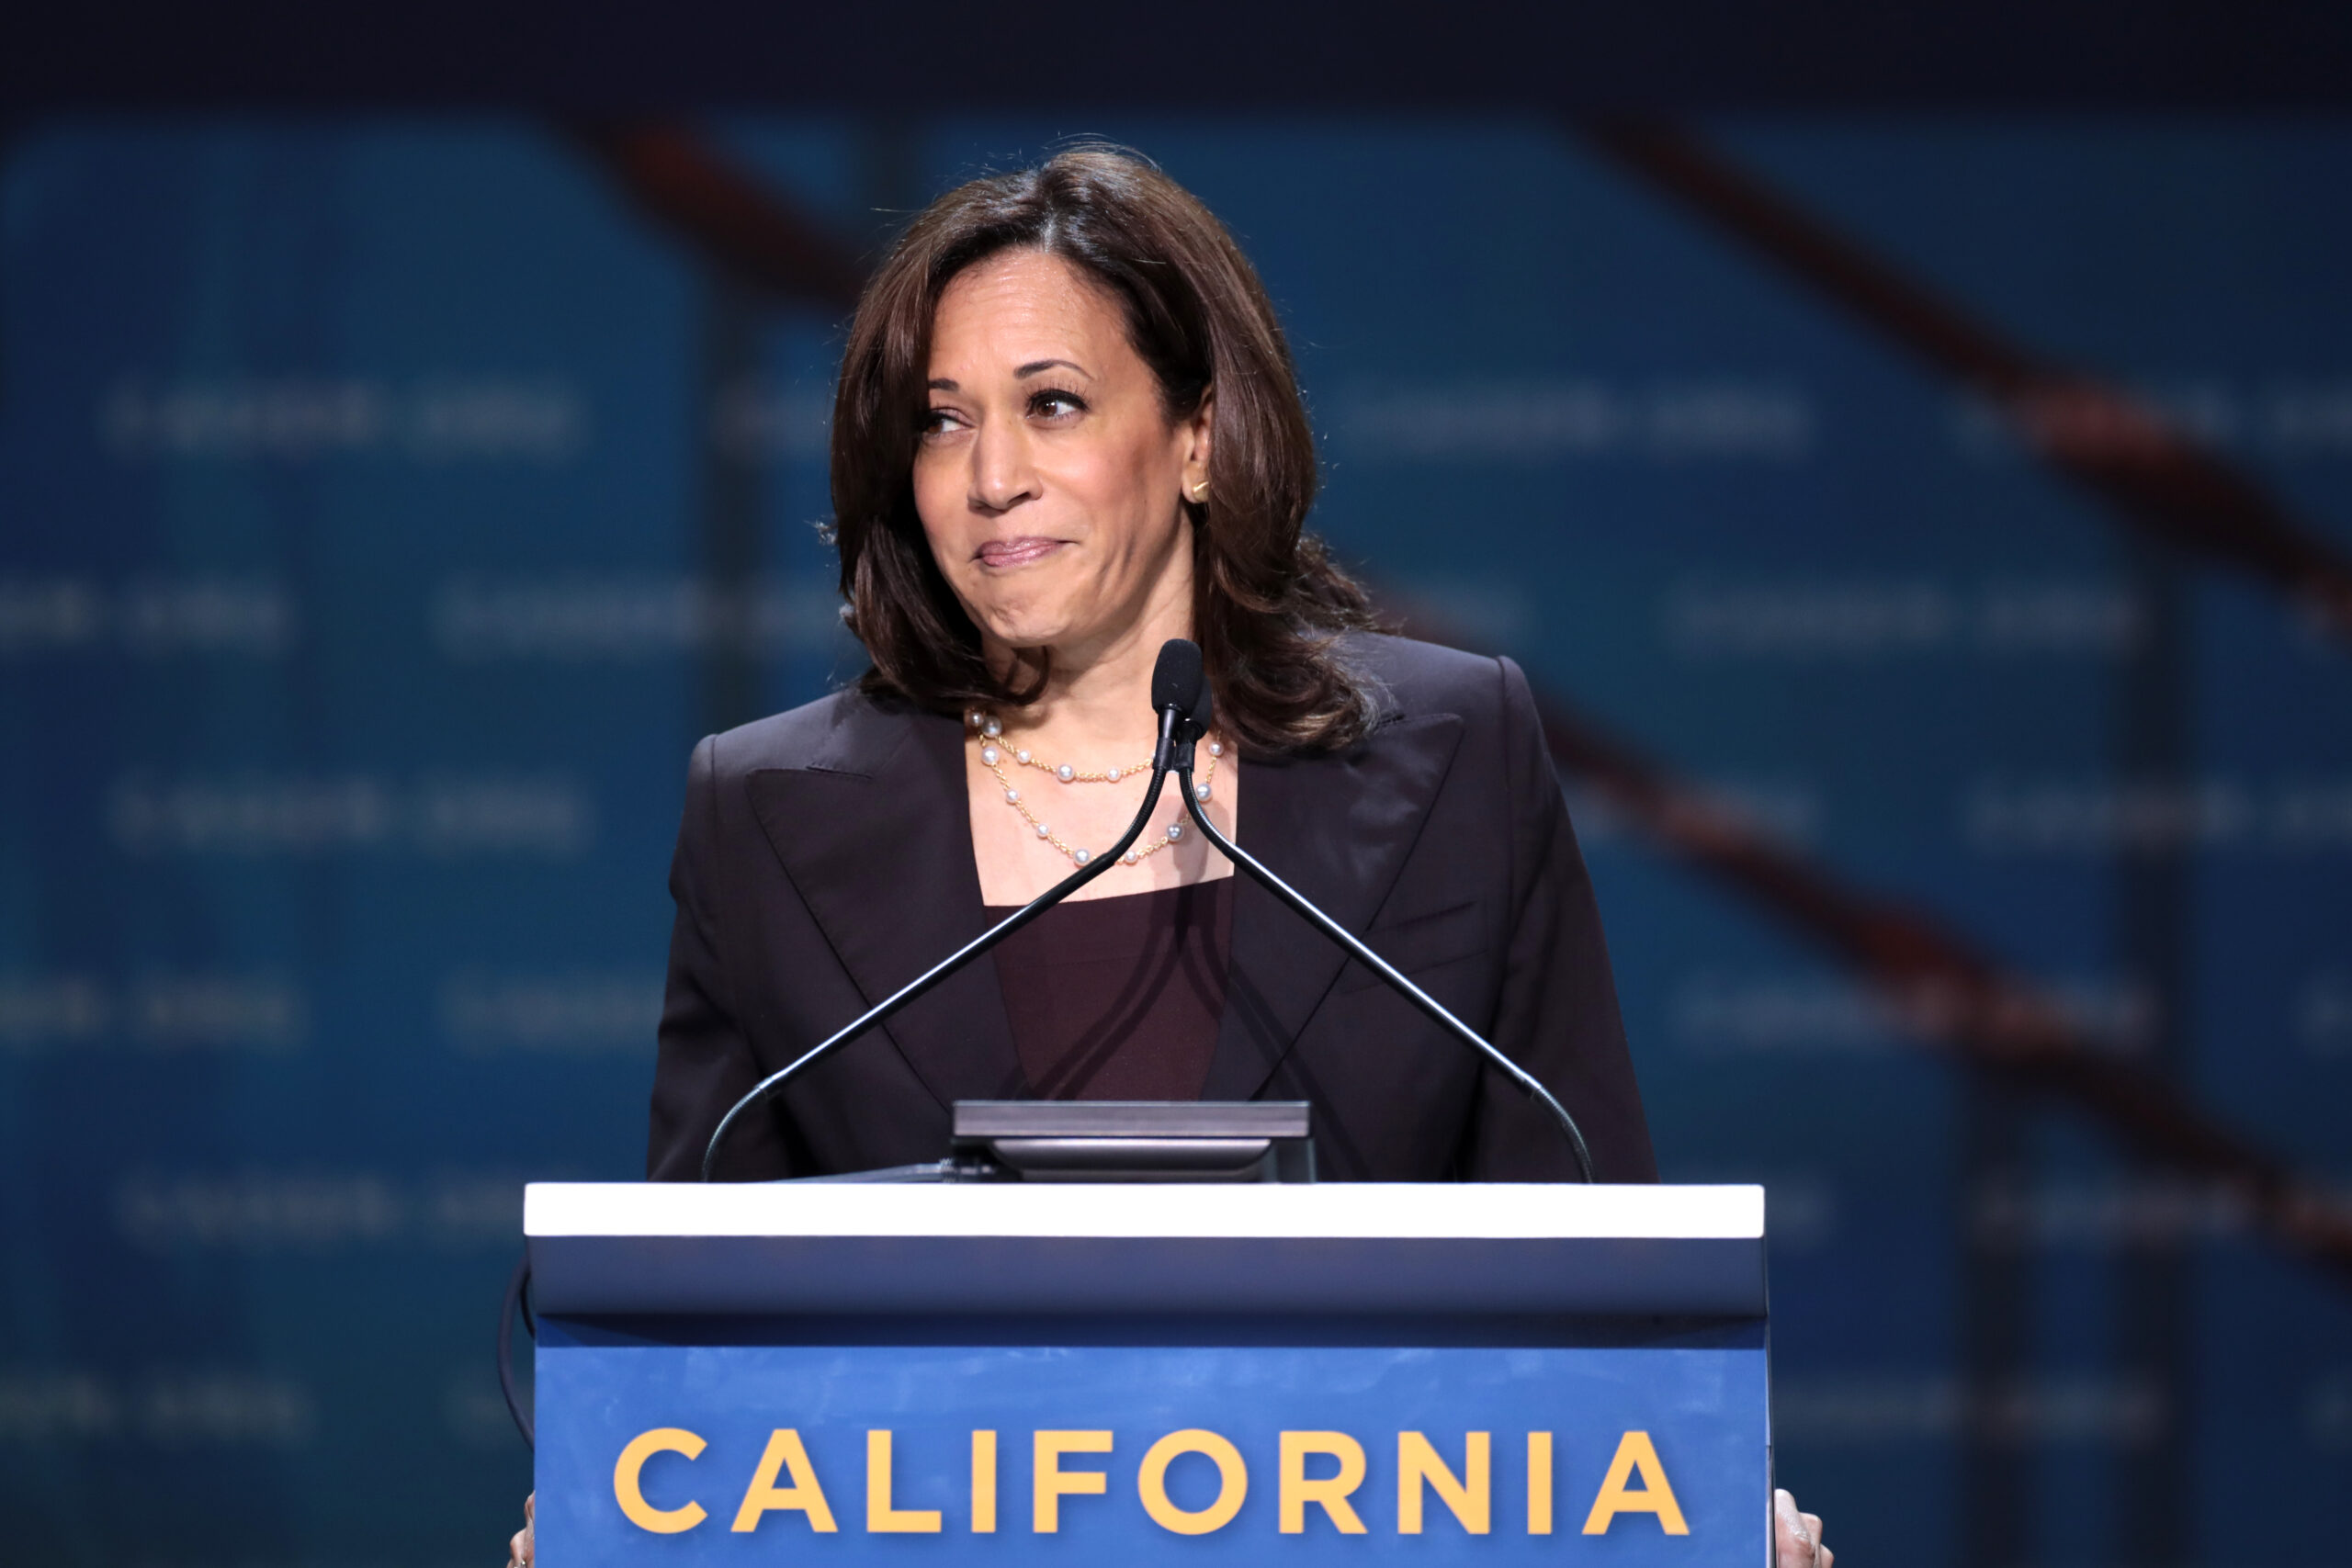 Sen. Harris addresses the California Democratic Convention in 2019